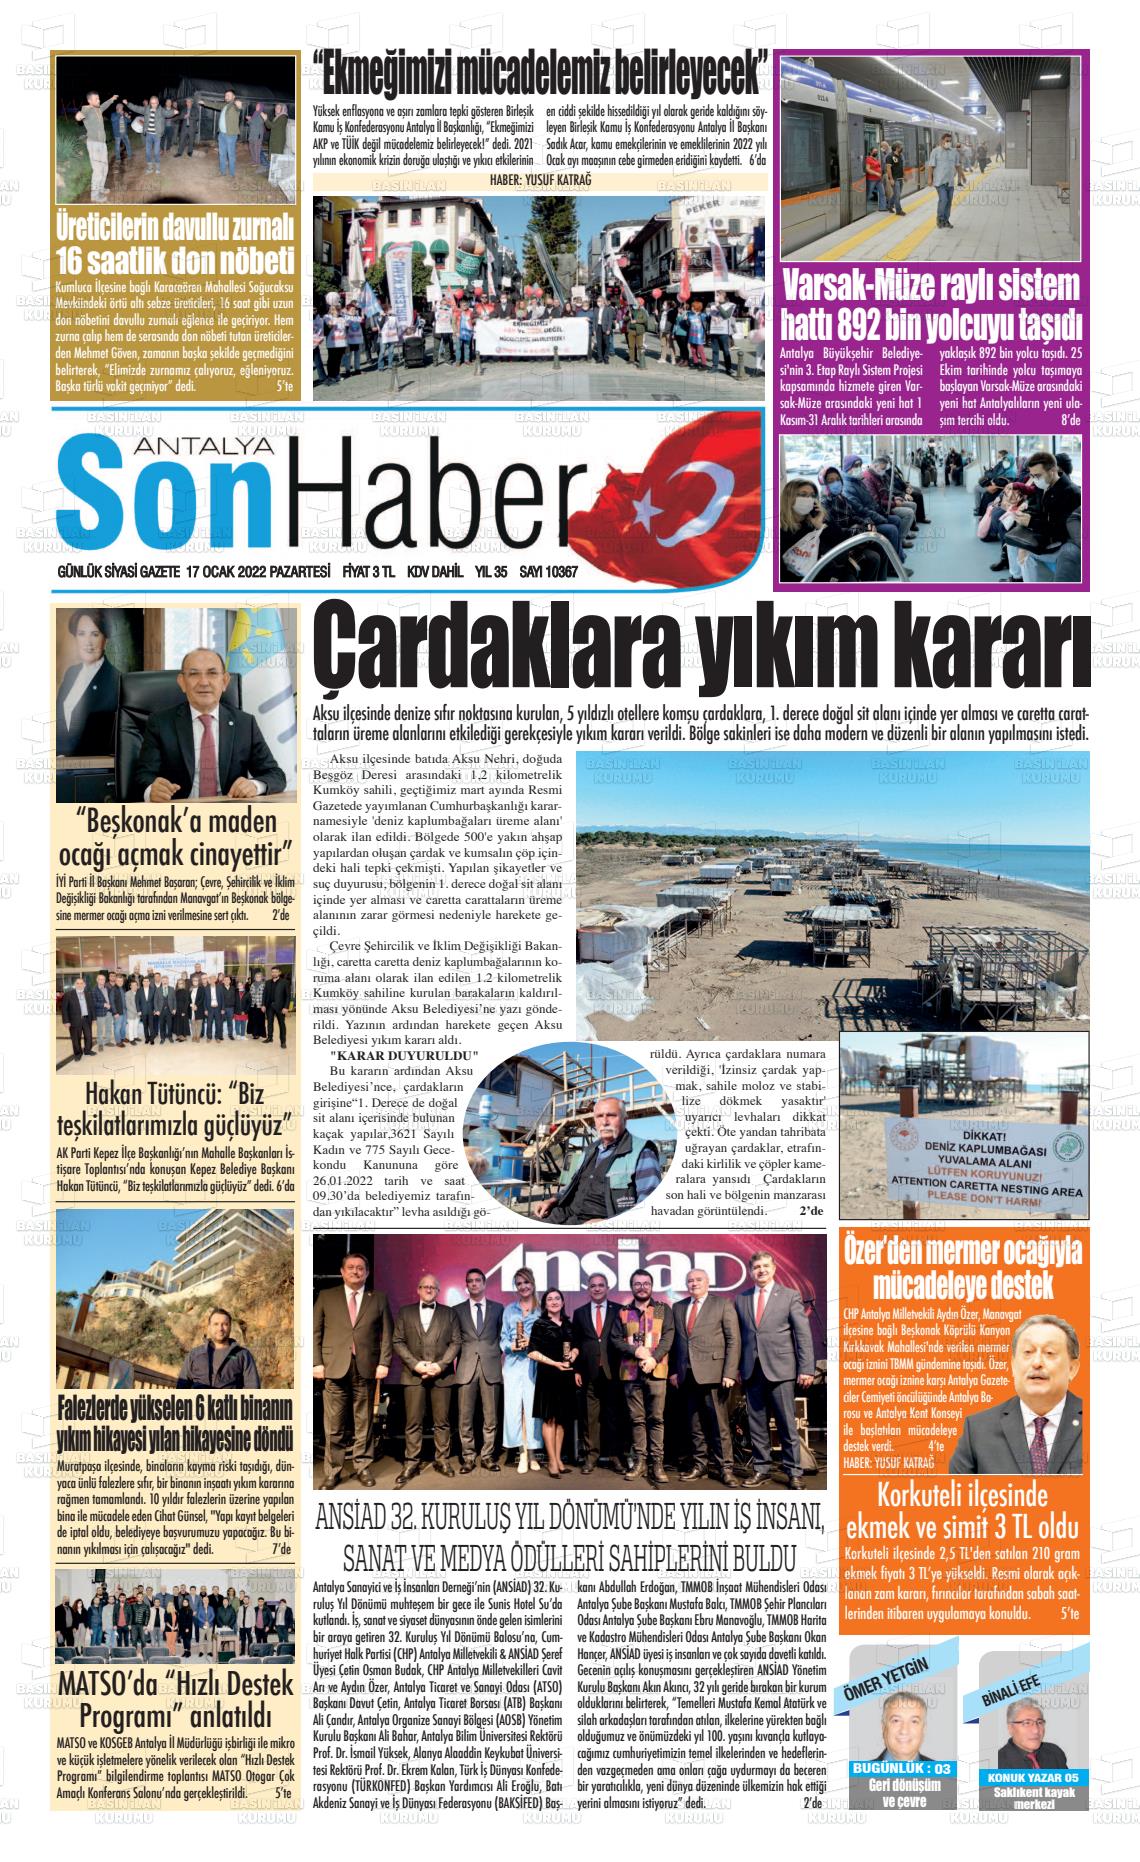 17 Ocak 2022 Antalya Son Haber Gazete Manşeti